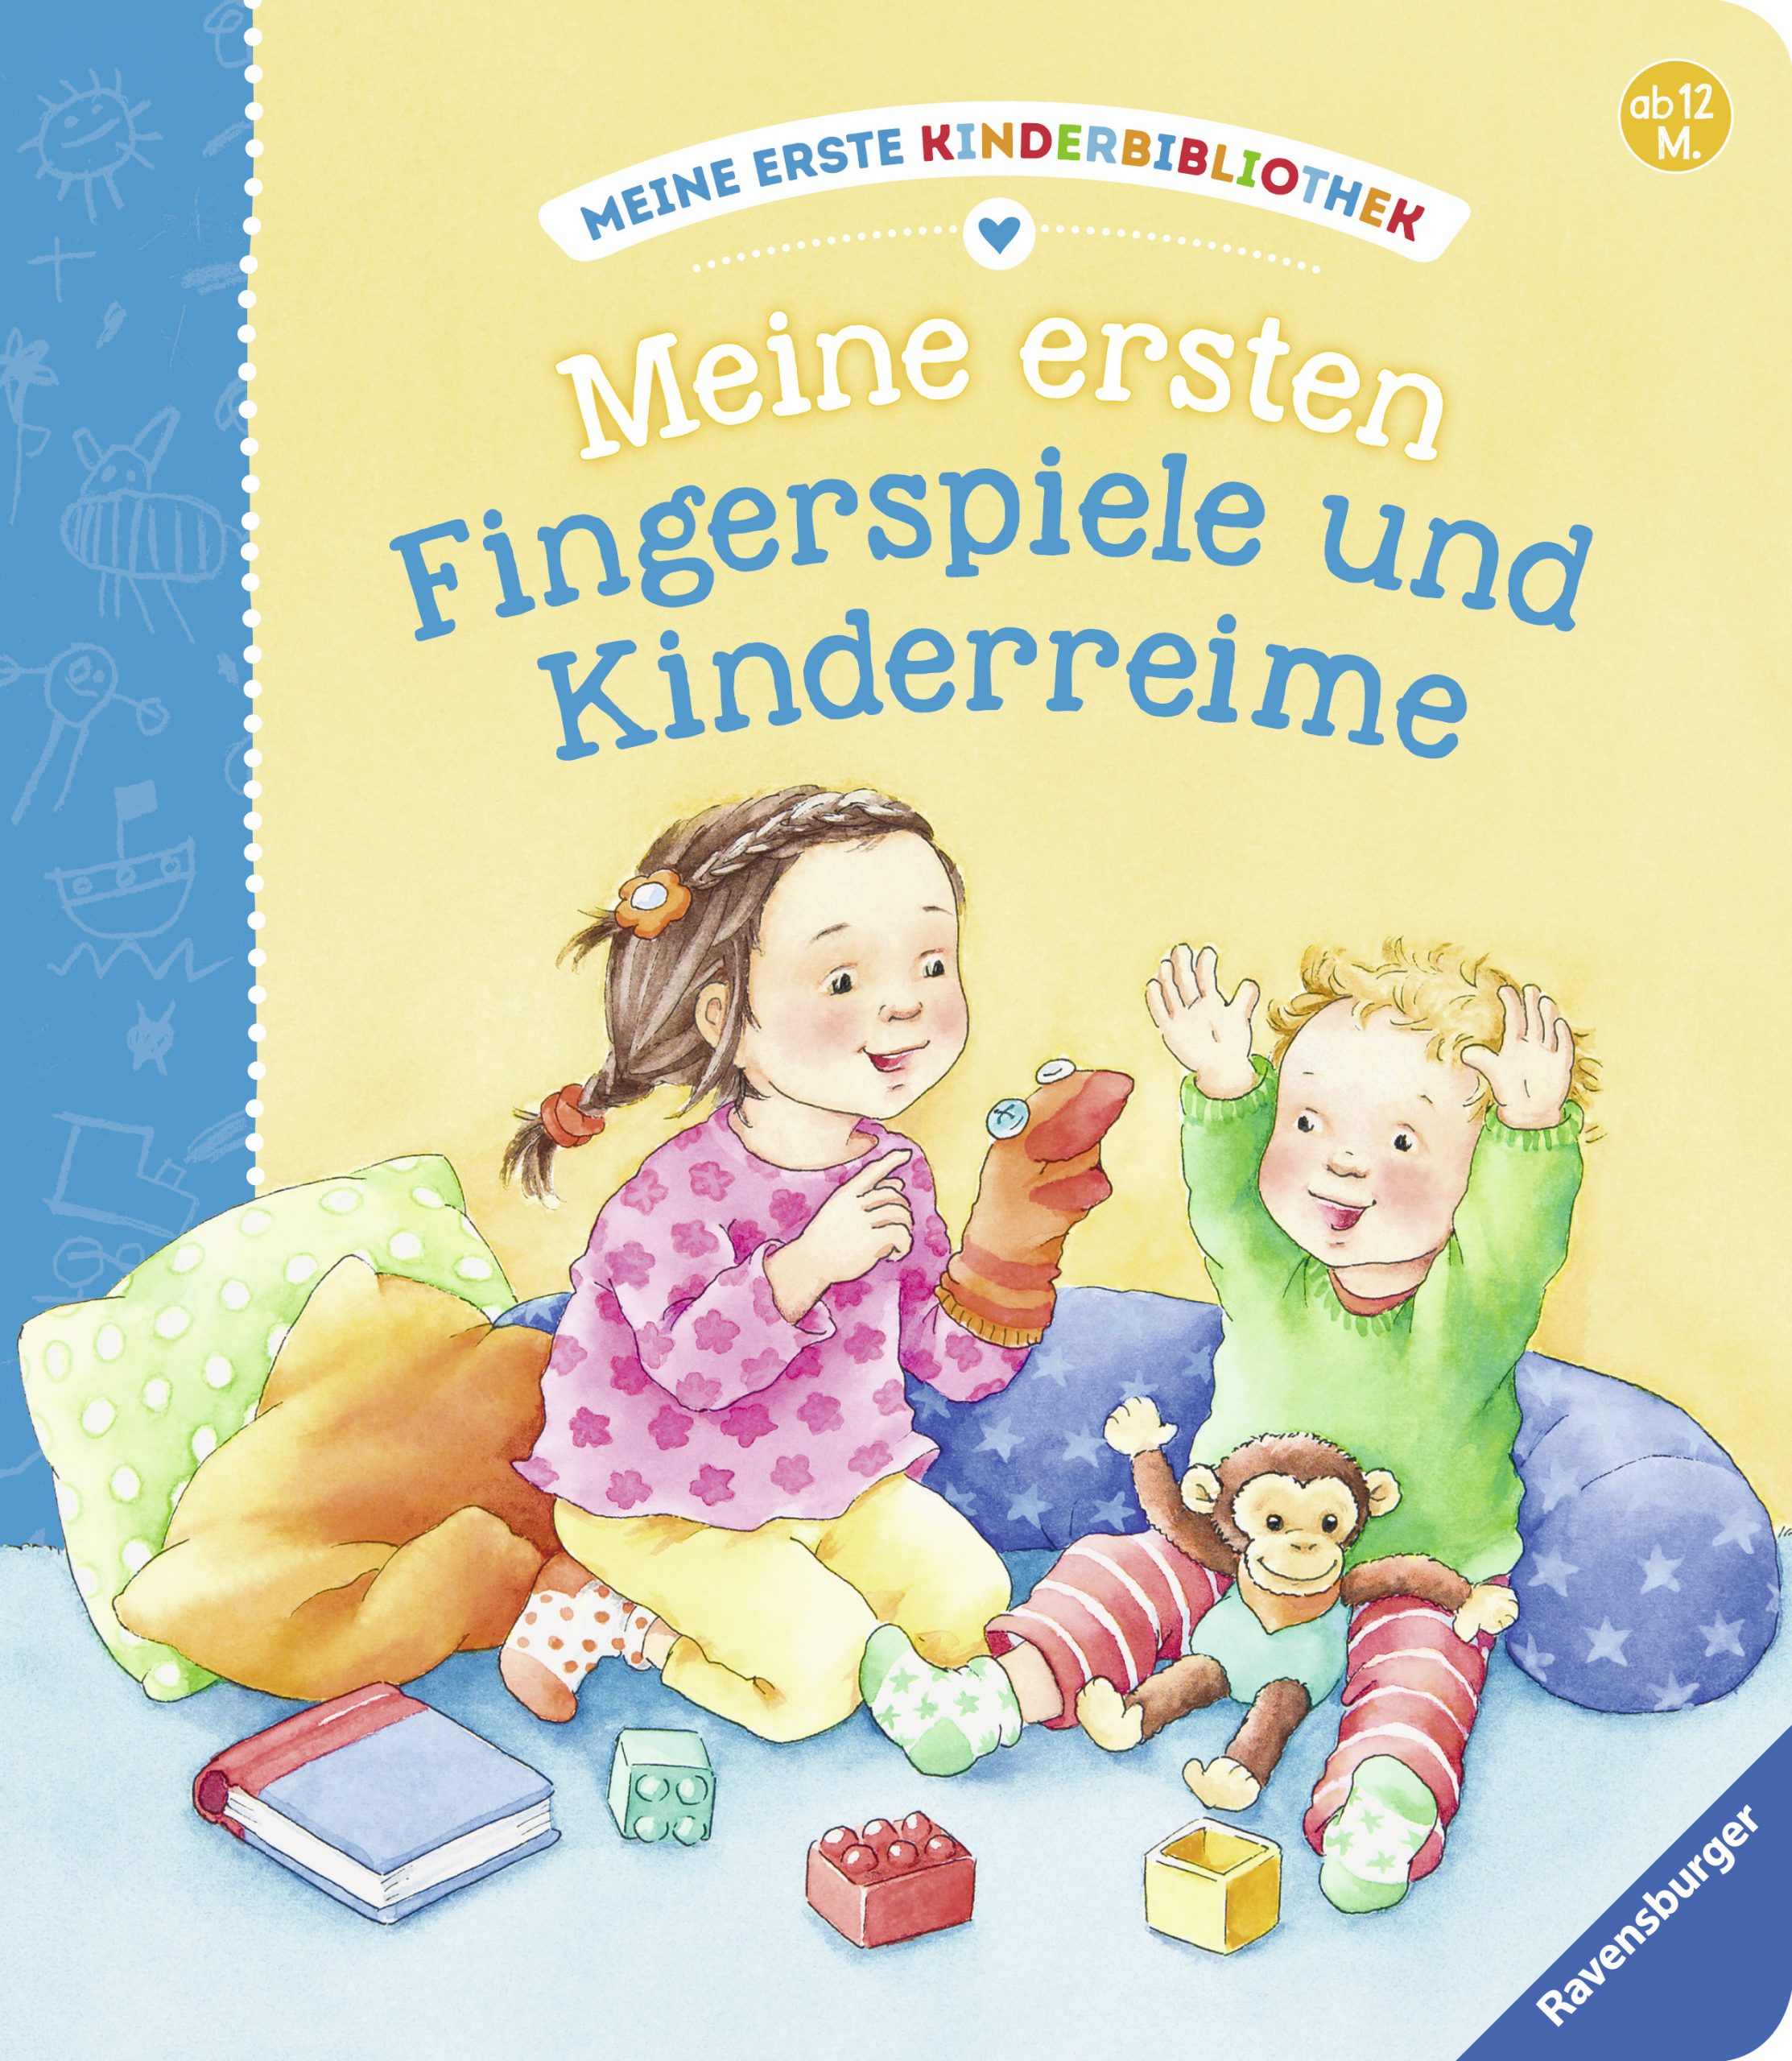 Meine Ersten Fingerspiele Und Kinderreime (Meine Erste Kinderbibliothek) ganzes Wieso Sind Bilderbücher Wichtig Für Kinder